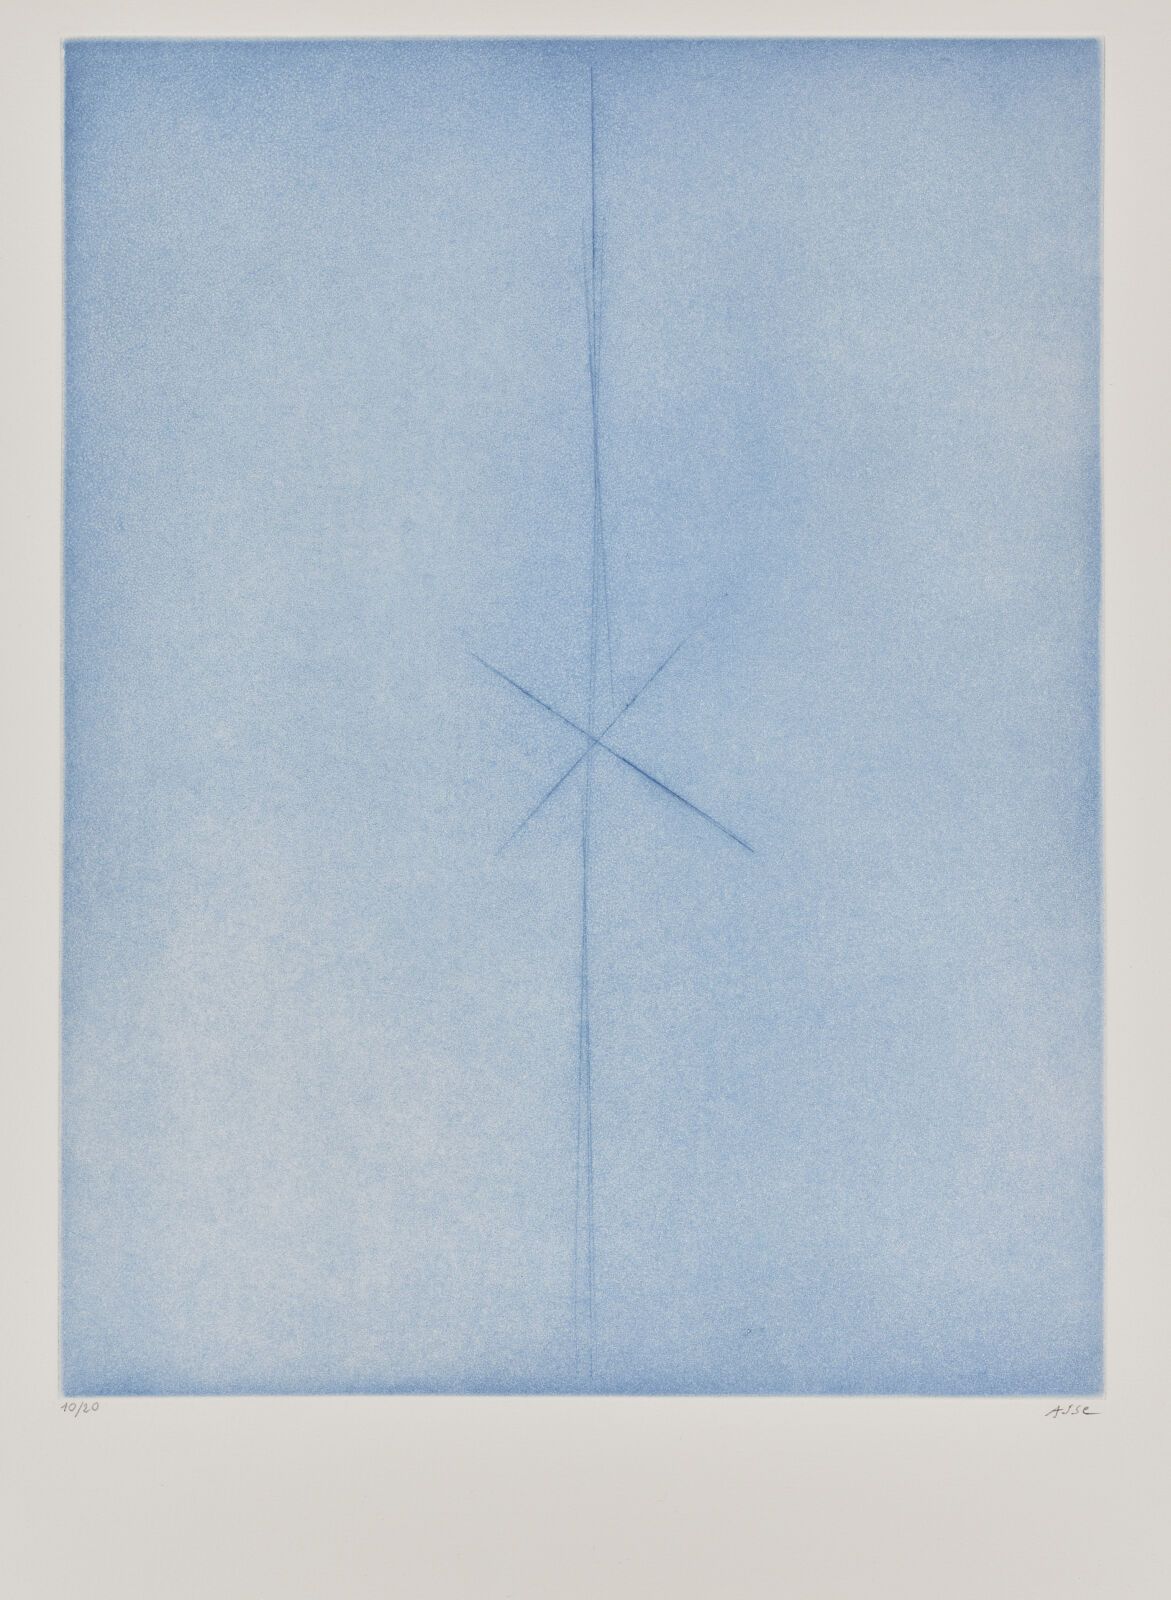 Null 热纳维耶夫-阿瑟（1923-2021）
蓝色构图。1999.水印和干点。纸张尺寸：66 x 49.8 厘米。彩色印刷。在牛皮纸上印制了非常精美、新鲜的&hellip;